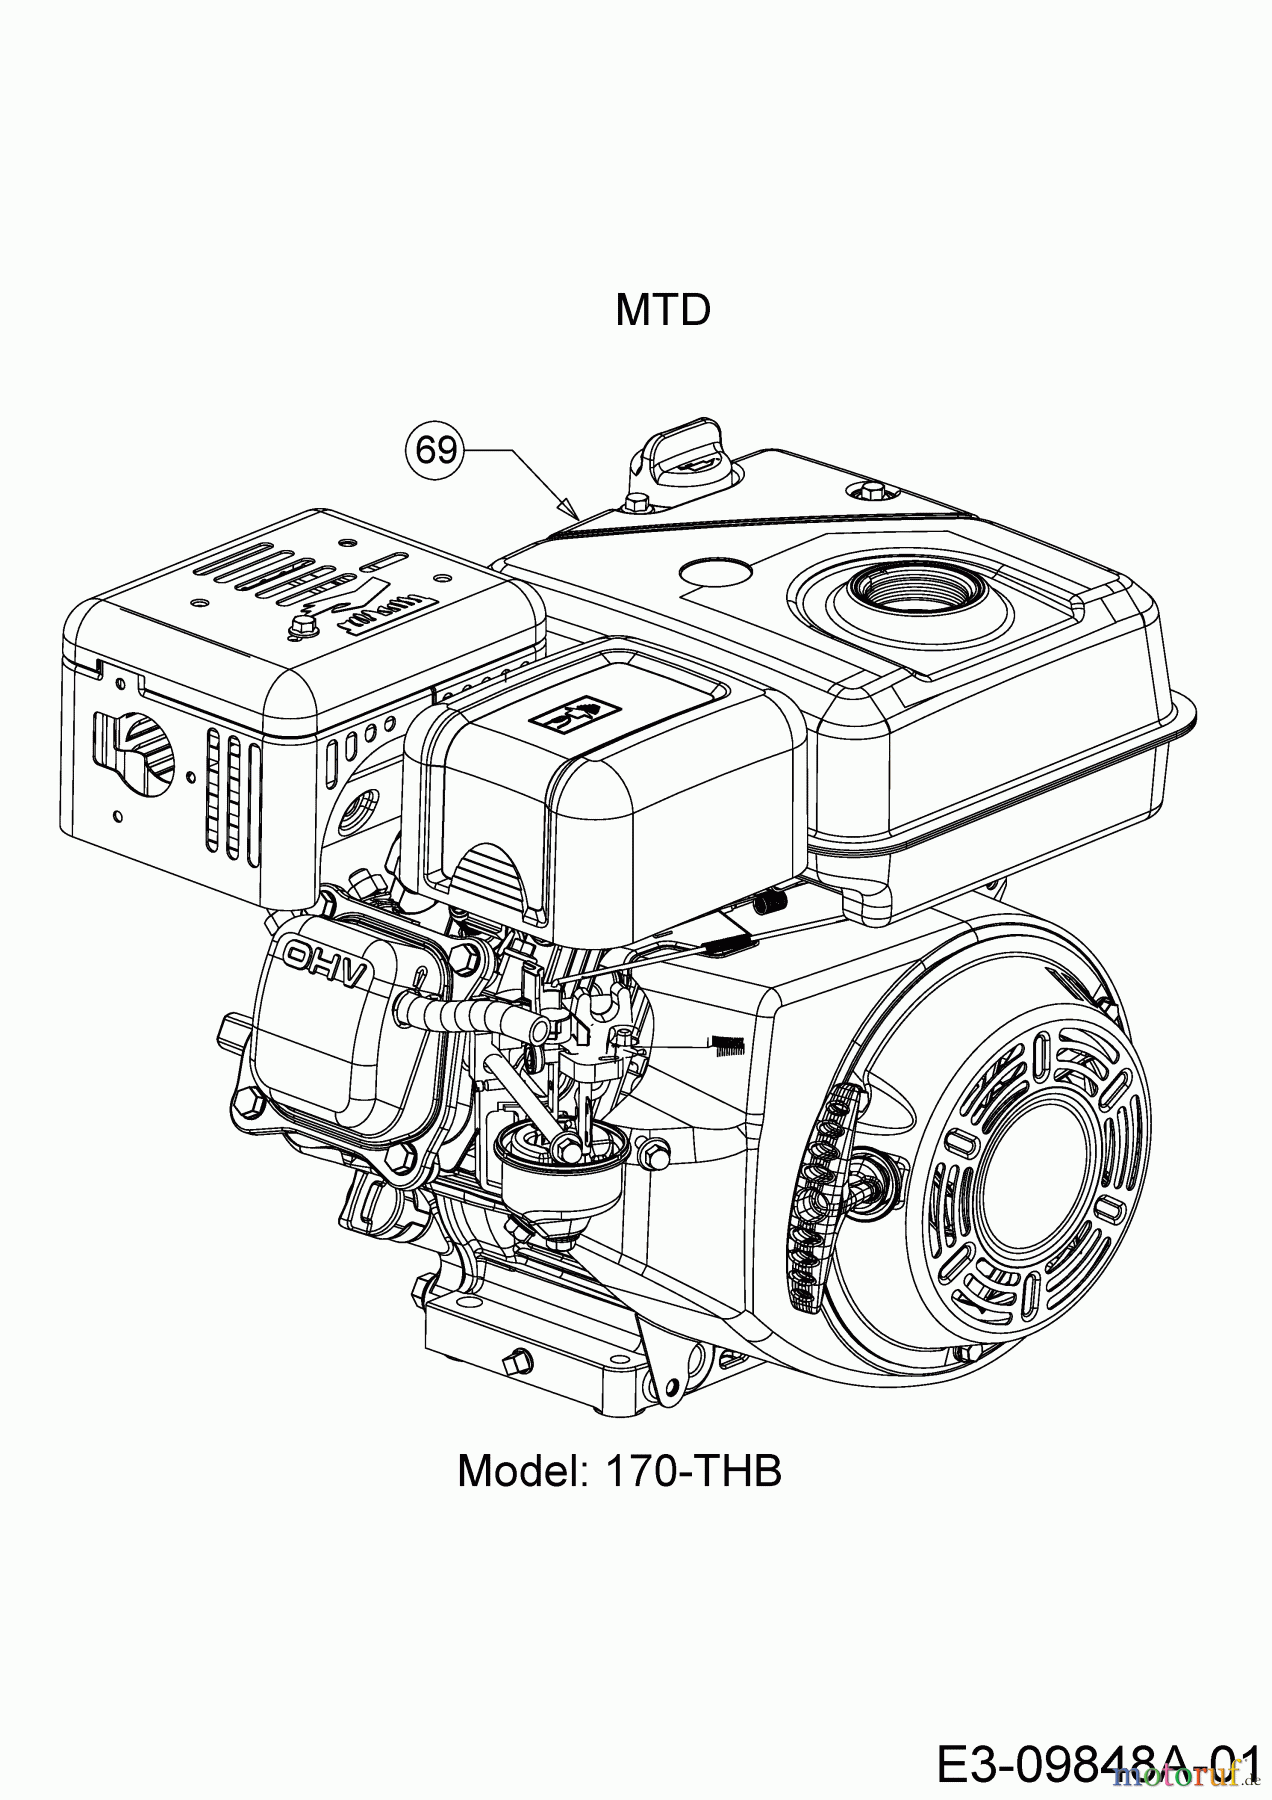  MTD Tillers T/405 M 21AA46M3678  (2018) Engine MTD